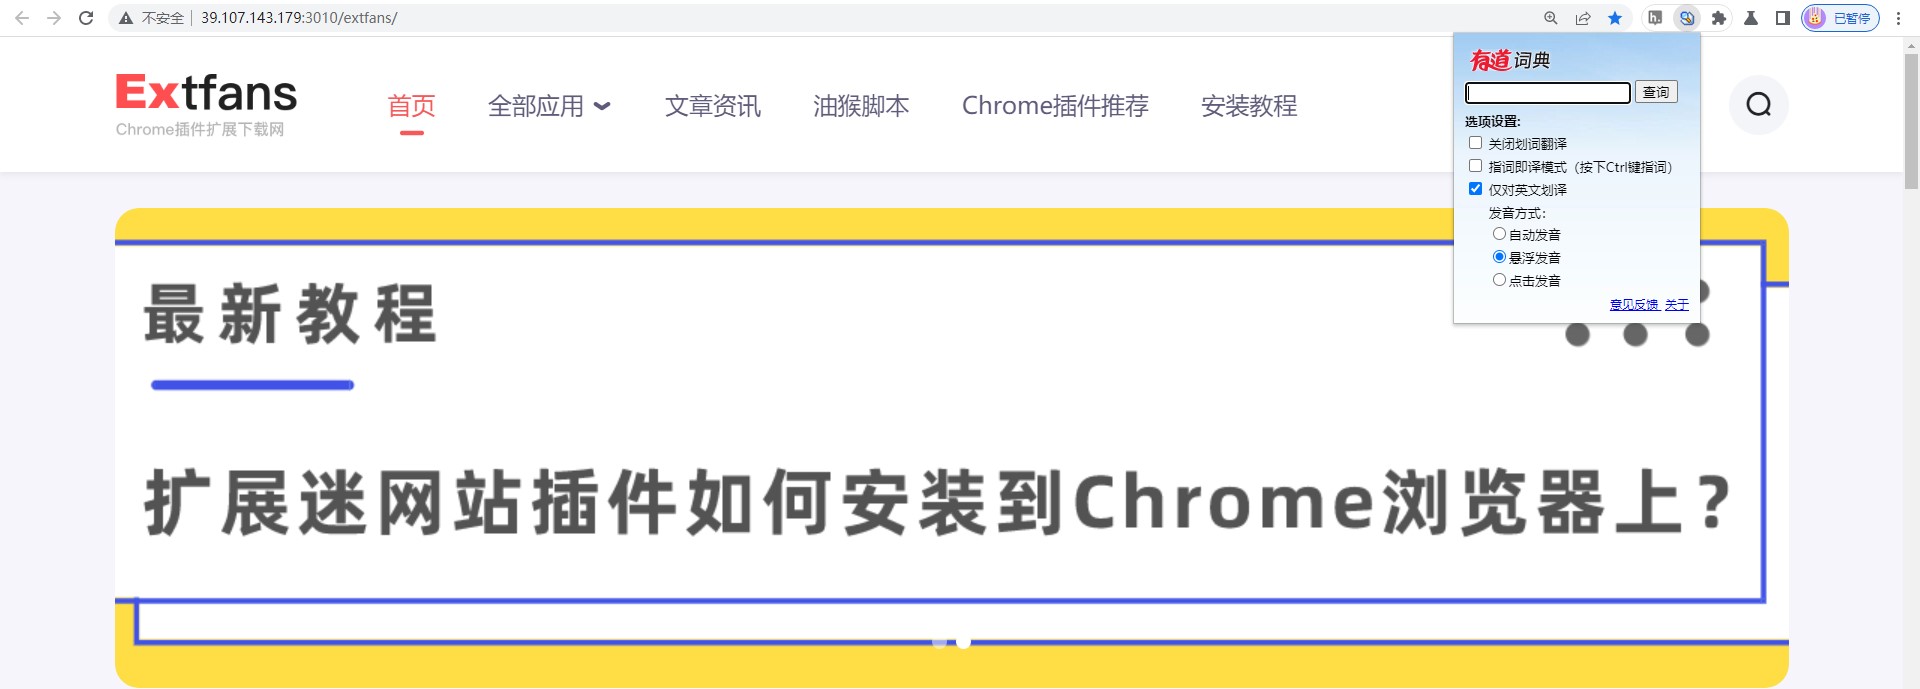 有道词典 Chrome 划词插件使用教程